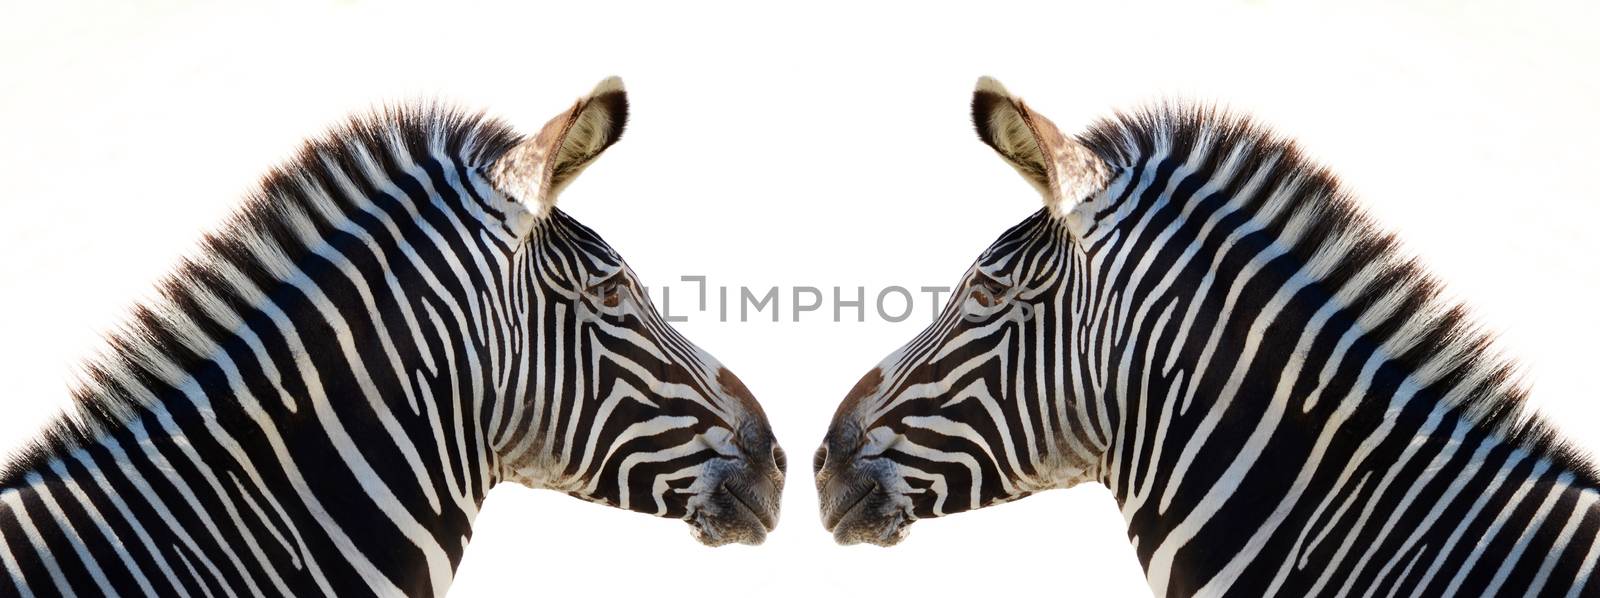 zebra by sarkao